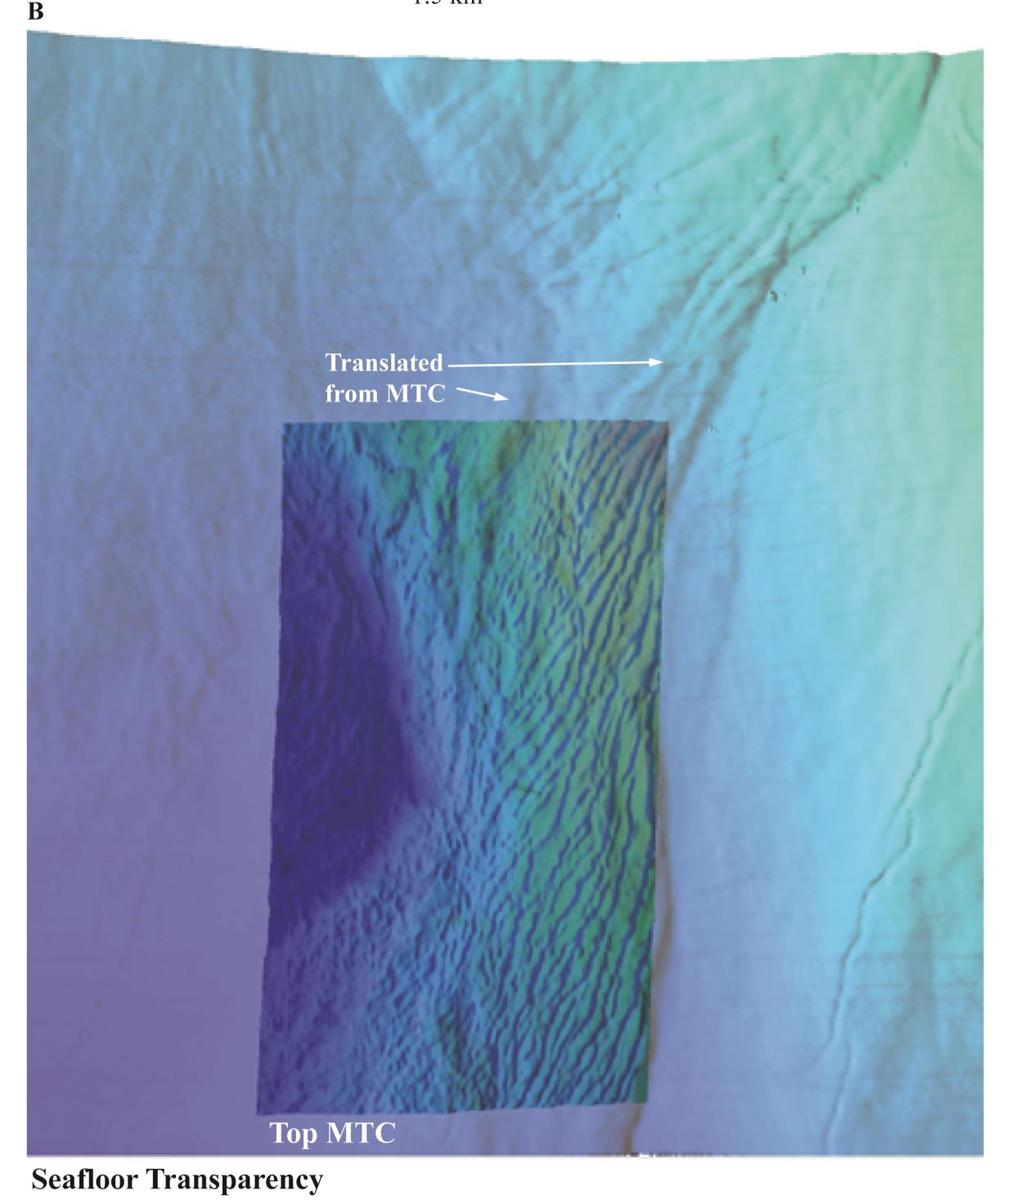 MTC is ~ 40 ms (30 m) below the seafloor. Brookshire, Jr. BN (2015).